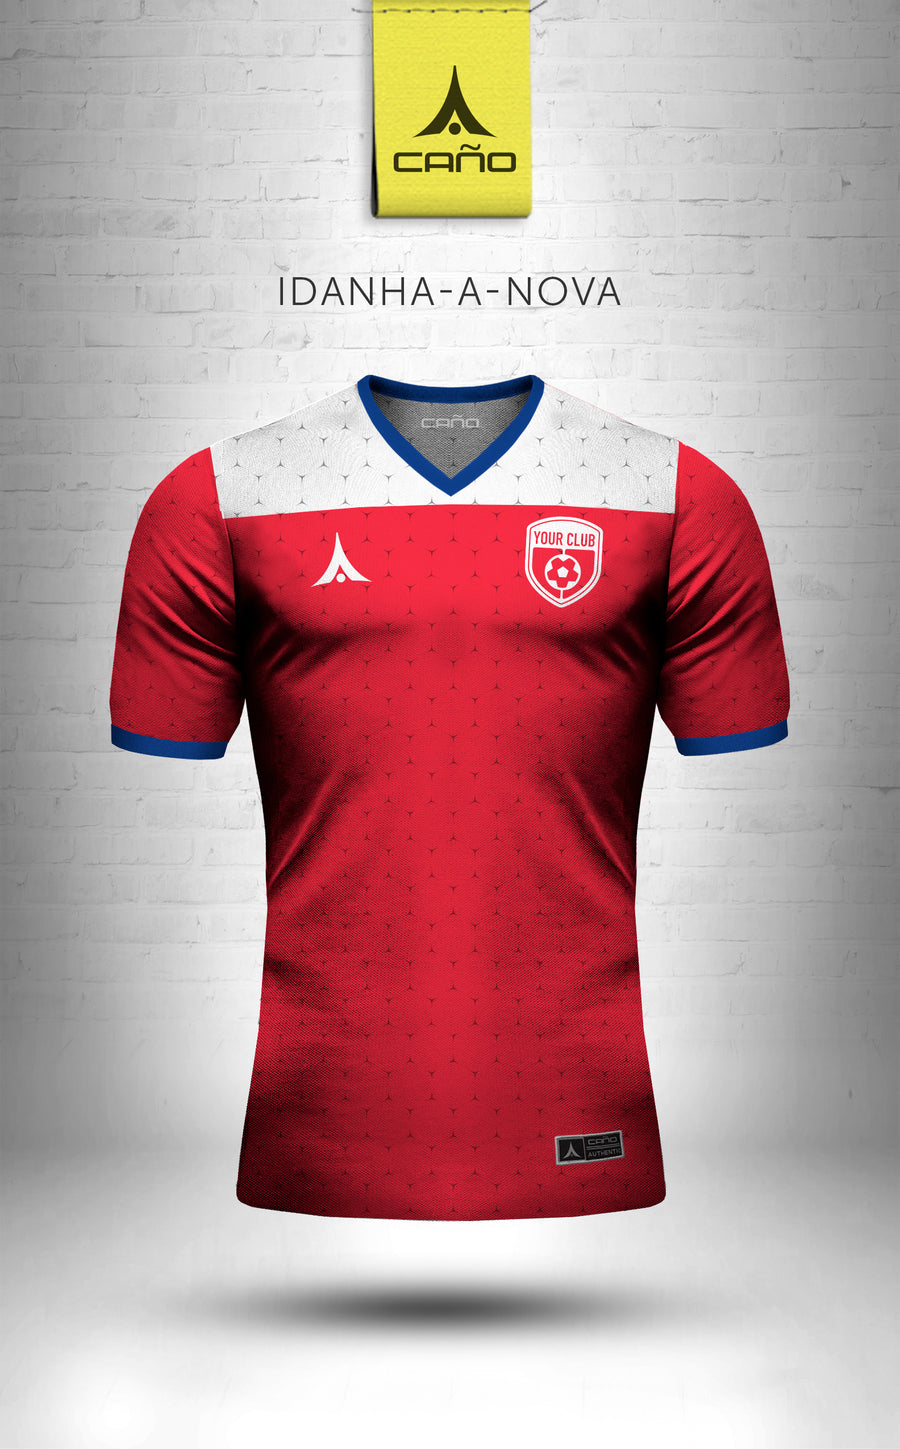 Idanha-a-Nova in red/blue/white